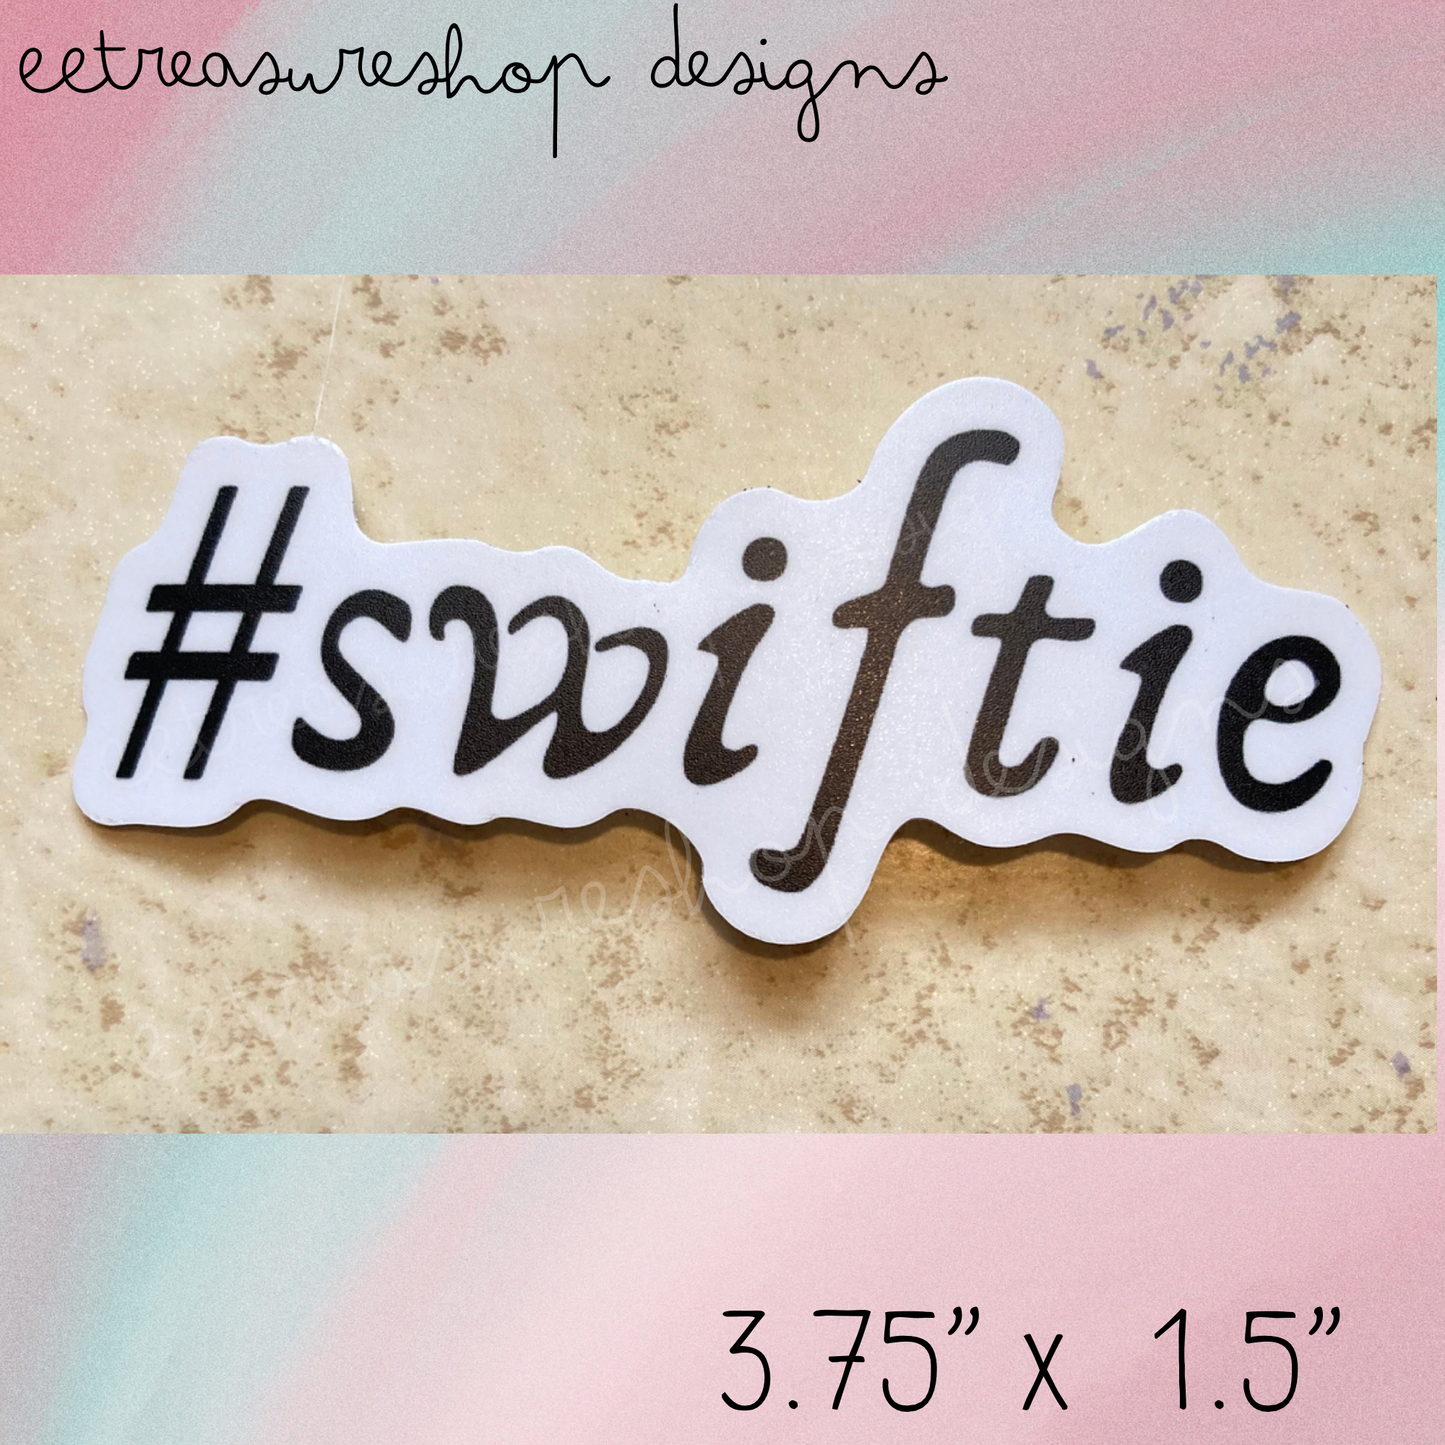 Swiftie Taylor Swift Inspired Waterproof Vinyl Sticker